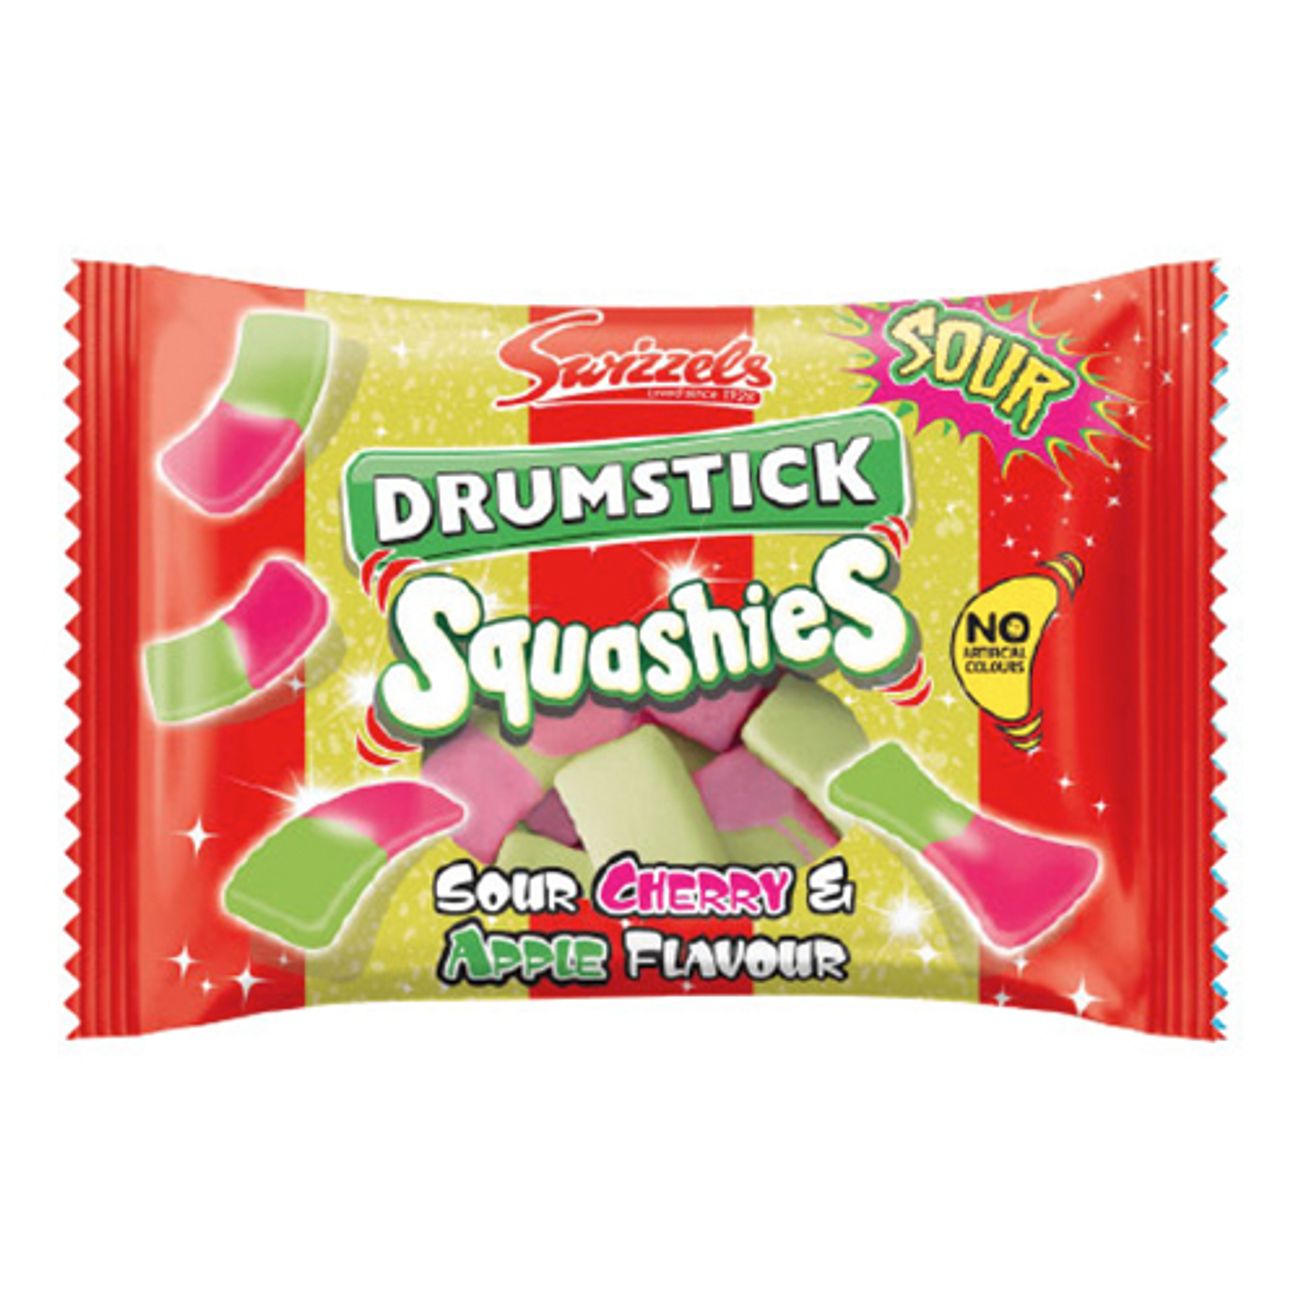 drumstick-squashies-cherryapple-1